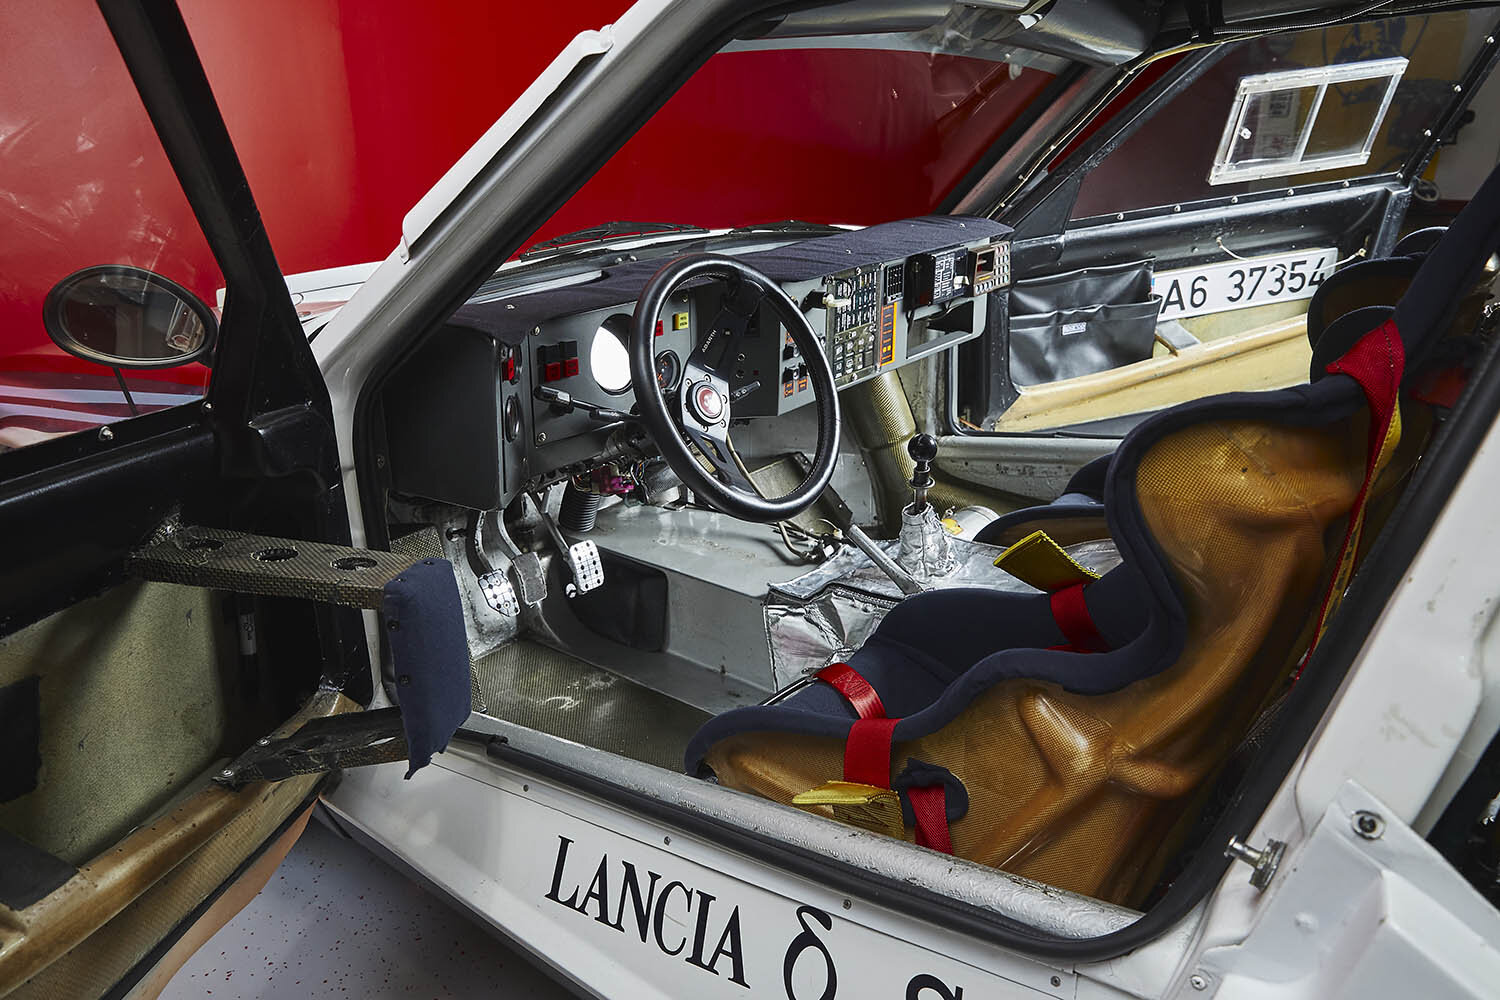 1985 Lancia Delta S4 Corsa - Girar.jpg